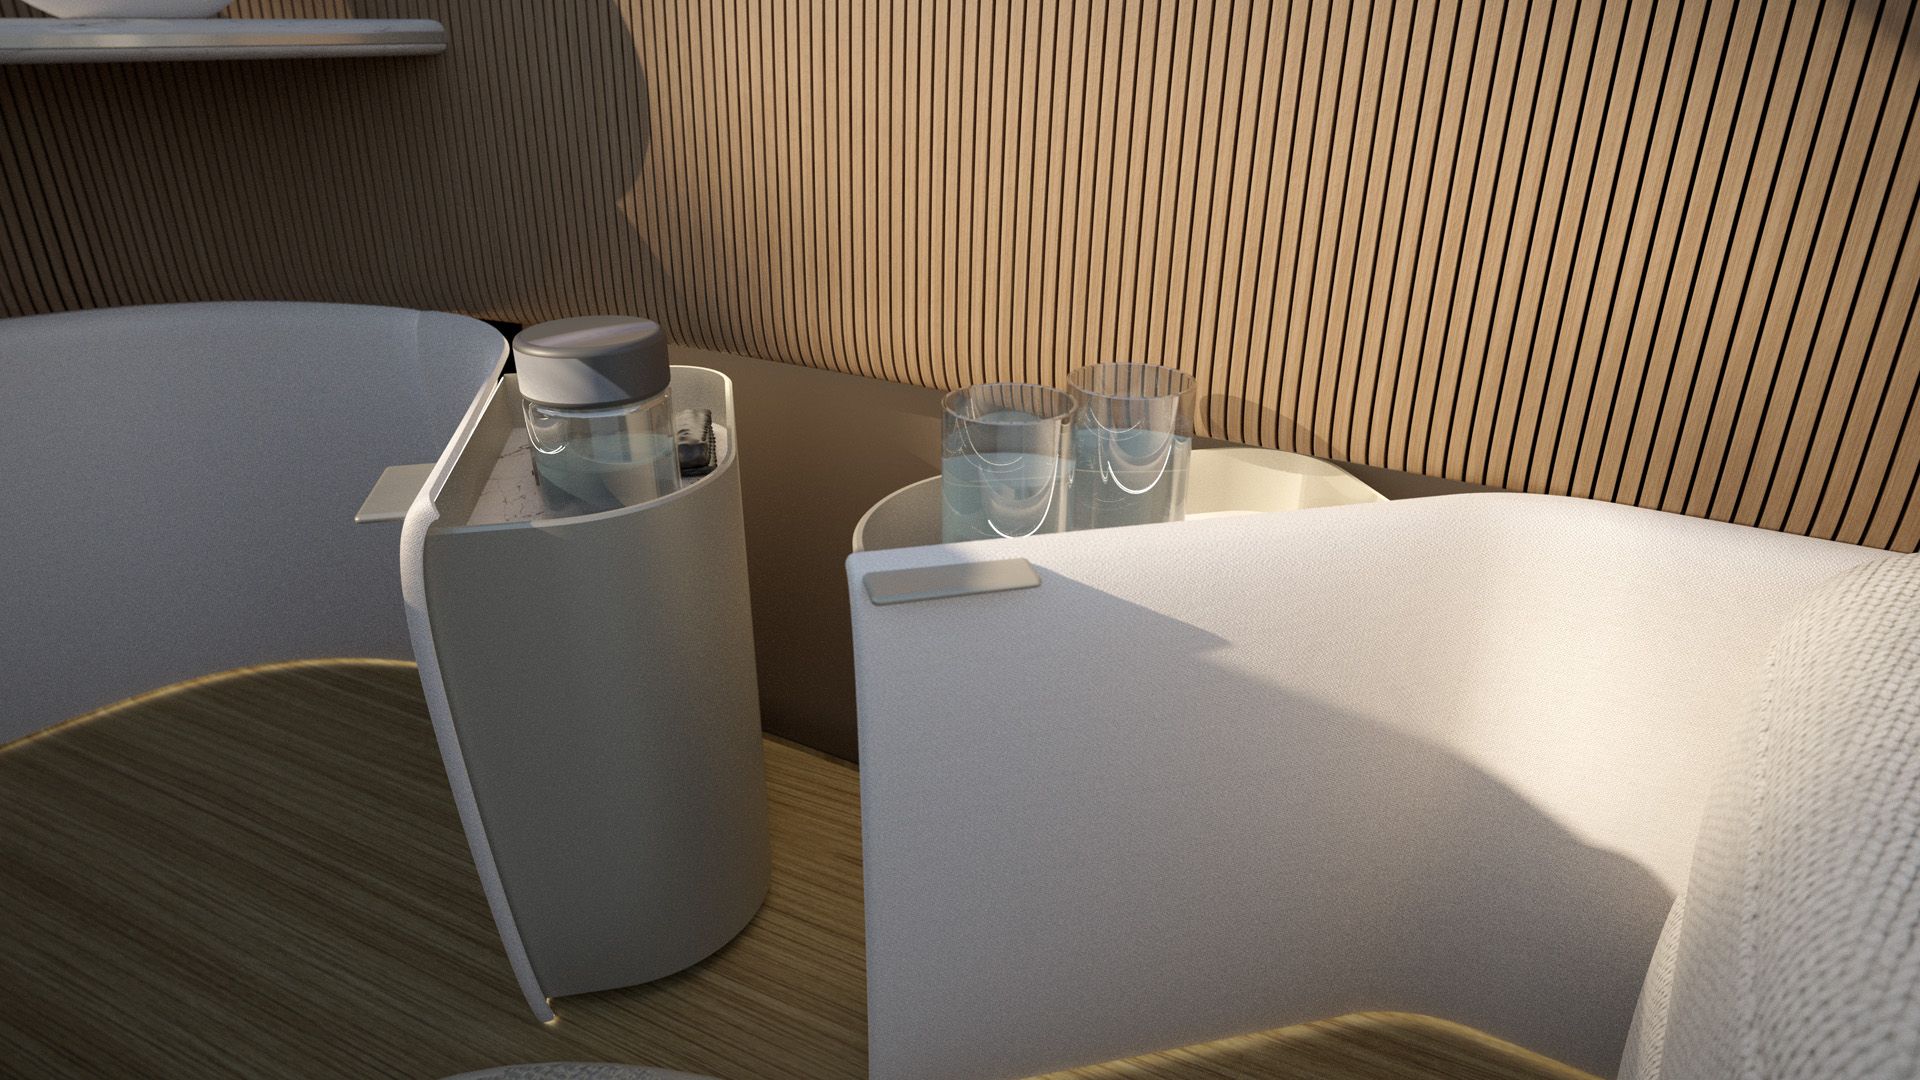 Gli elementi dei sedili nel progetto degli interni di Poliform per Audi urbansphere concept includono porta-bevande.